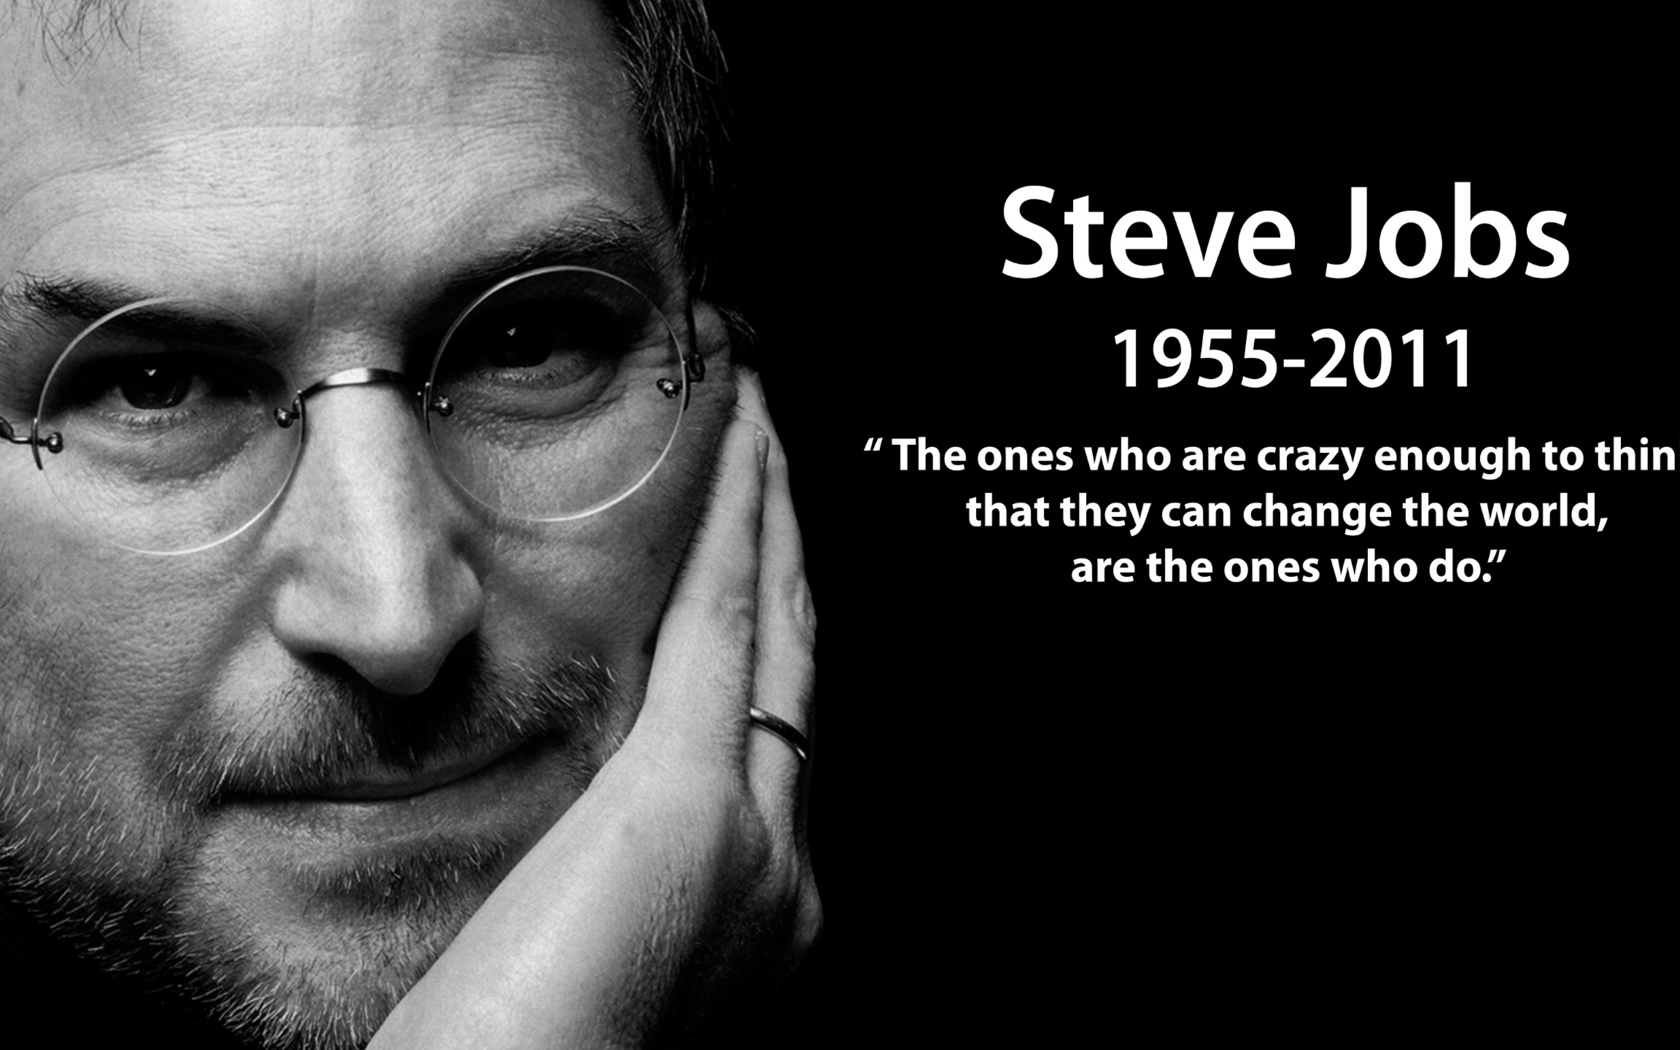 Steve_Jobs_apkfabia